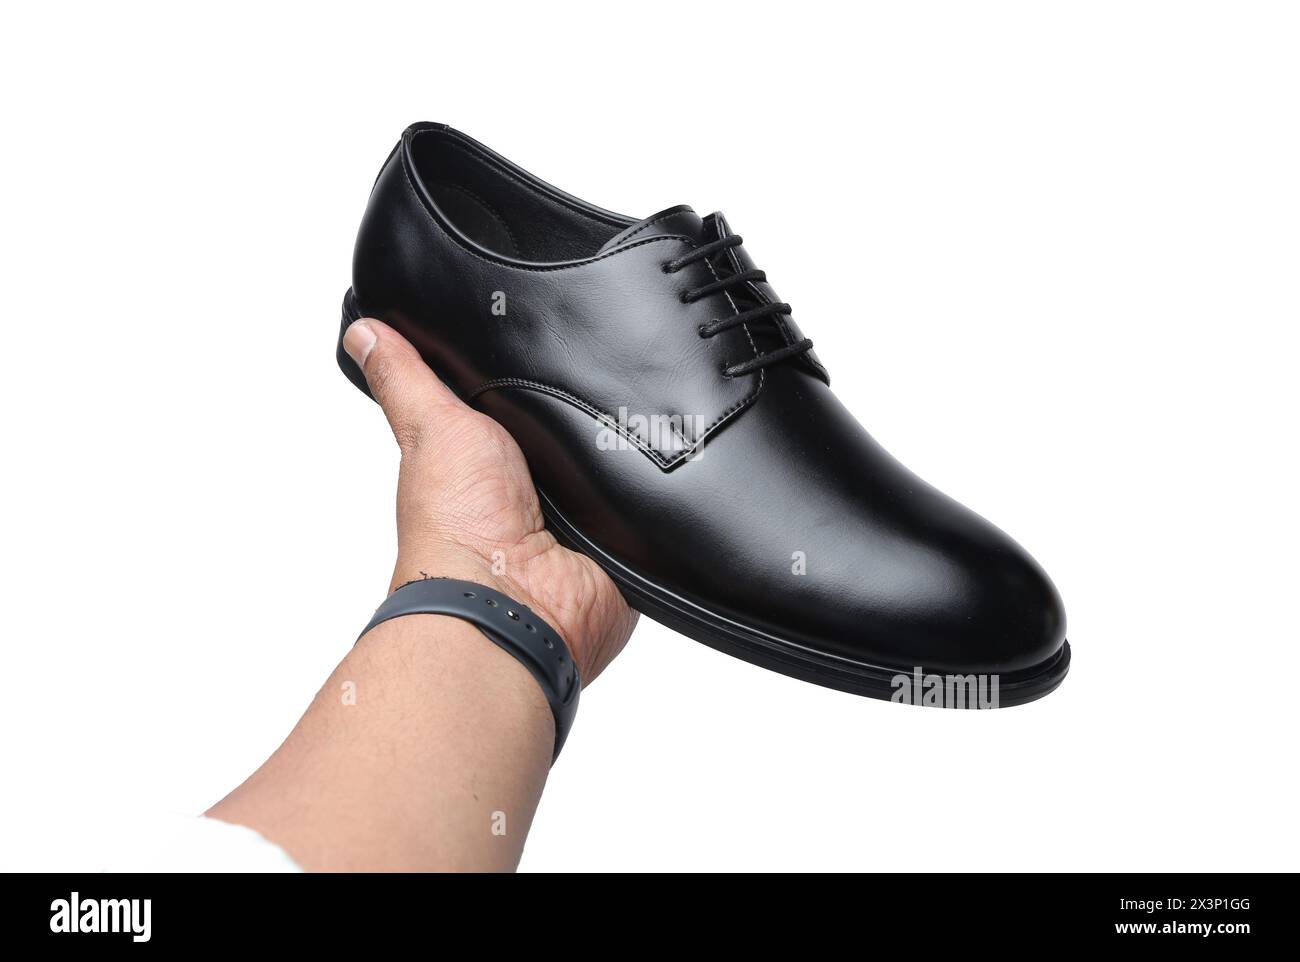 scarpe formali in pelle nera isolate su sfondo bianco Foto Stock